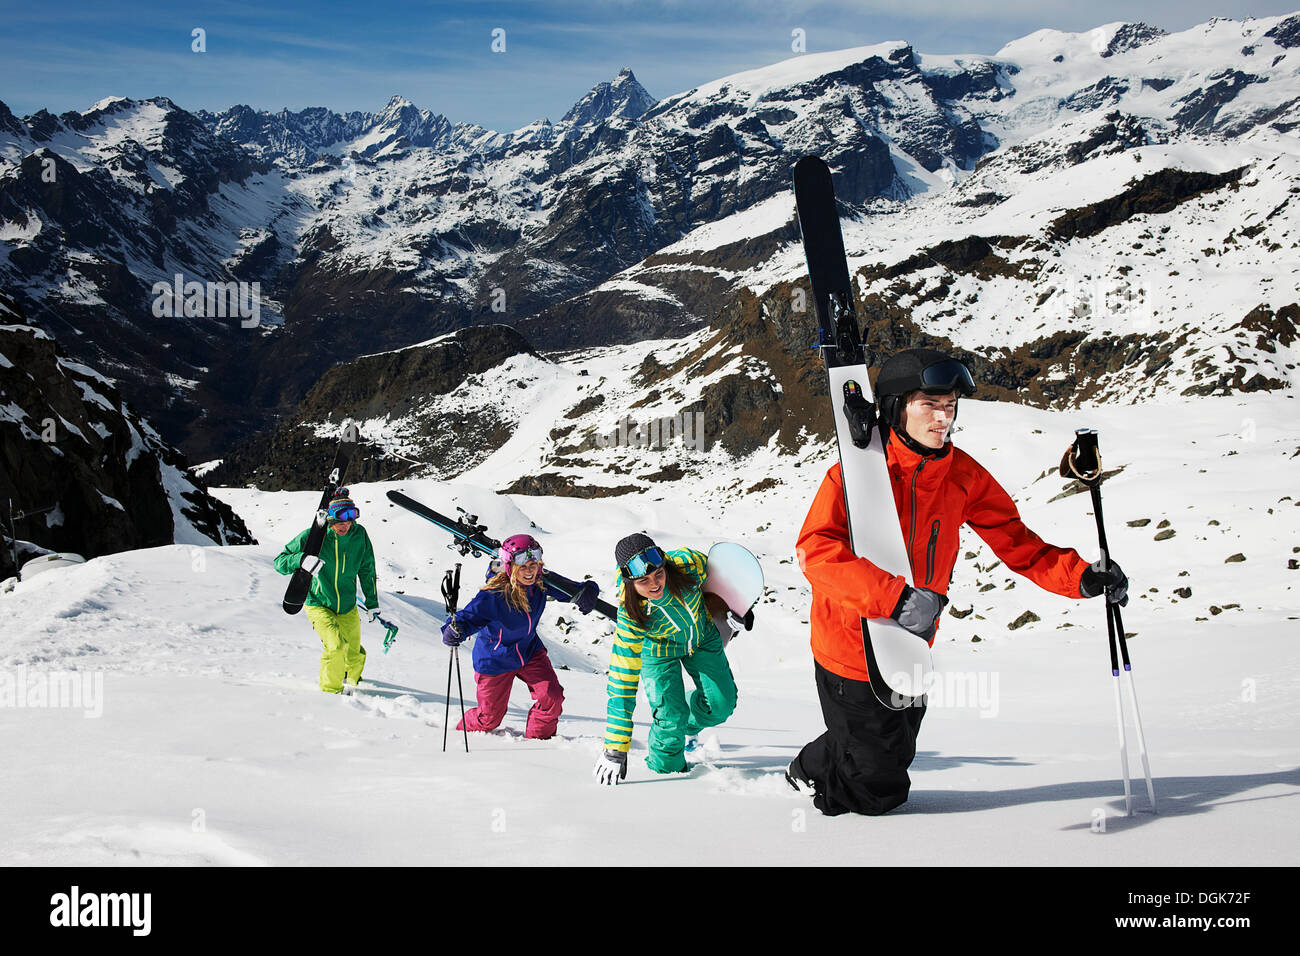 Groupe de skieurs de montagne d'escalade avec l'équipement de ski Banque D'Images